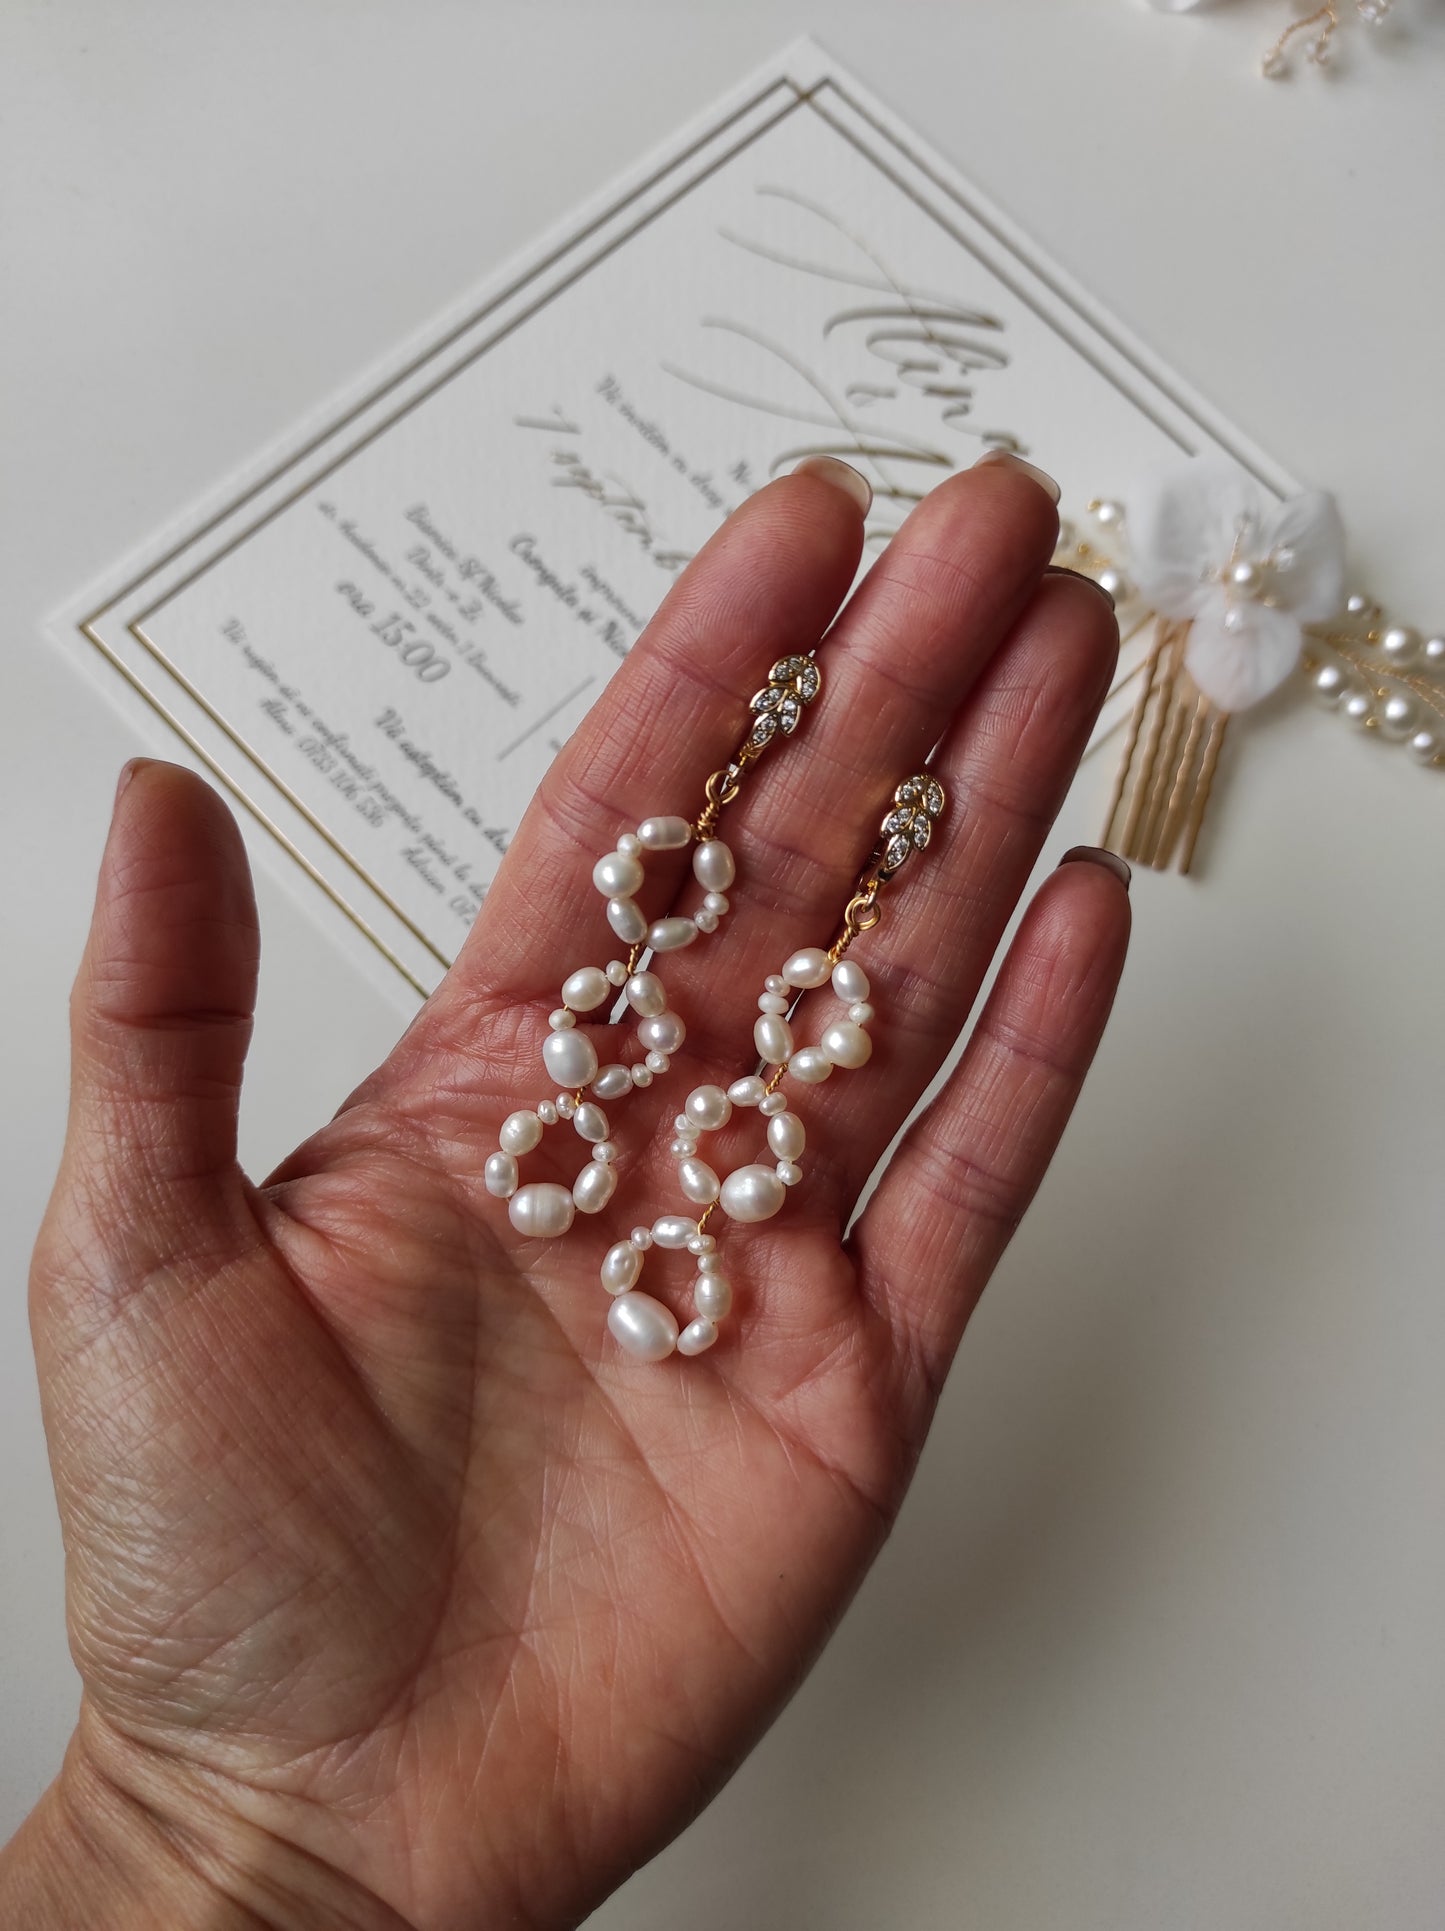 BEYOND - Freshwater pearl earrings / Wedding jewelry / Bridal earrings